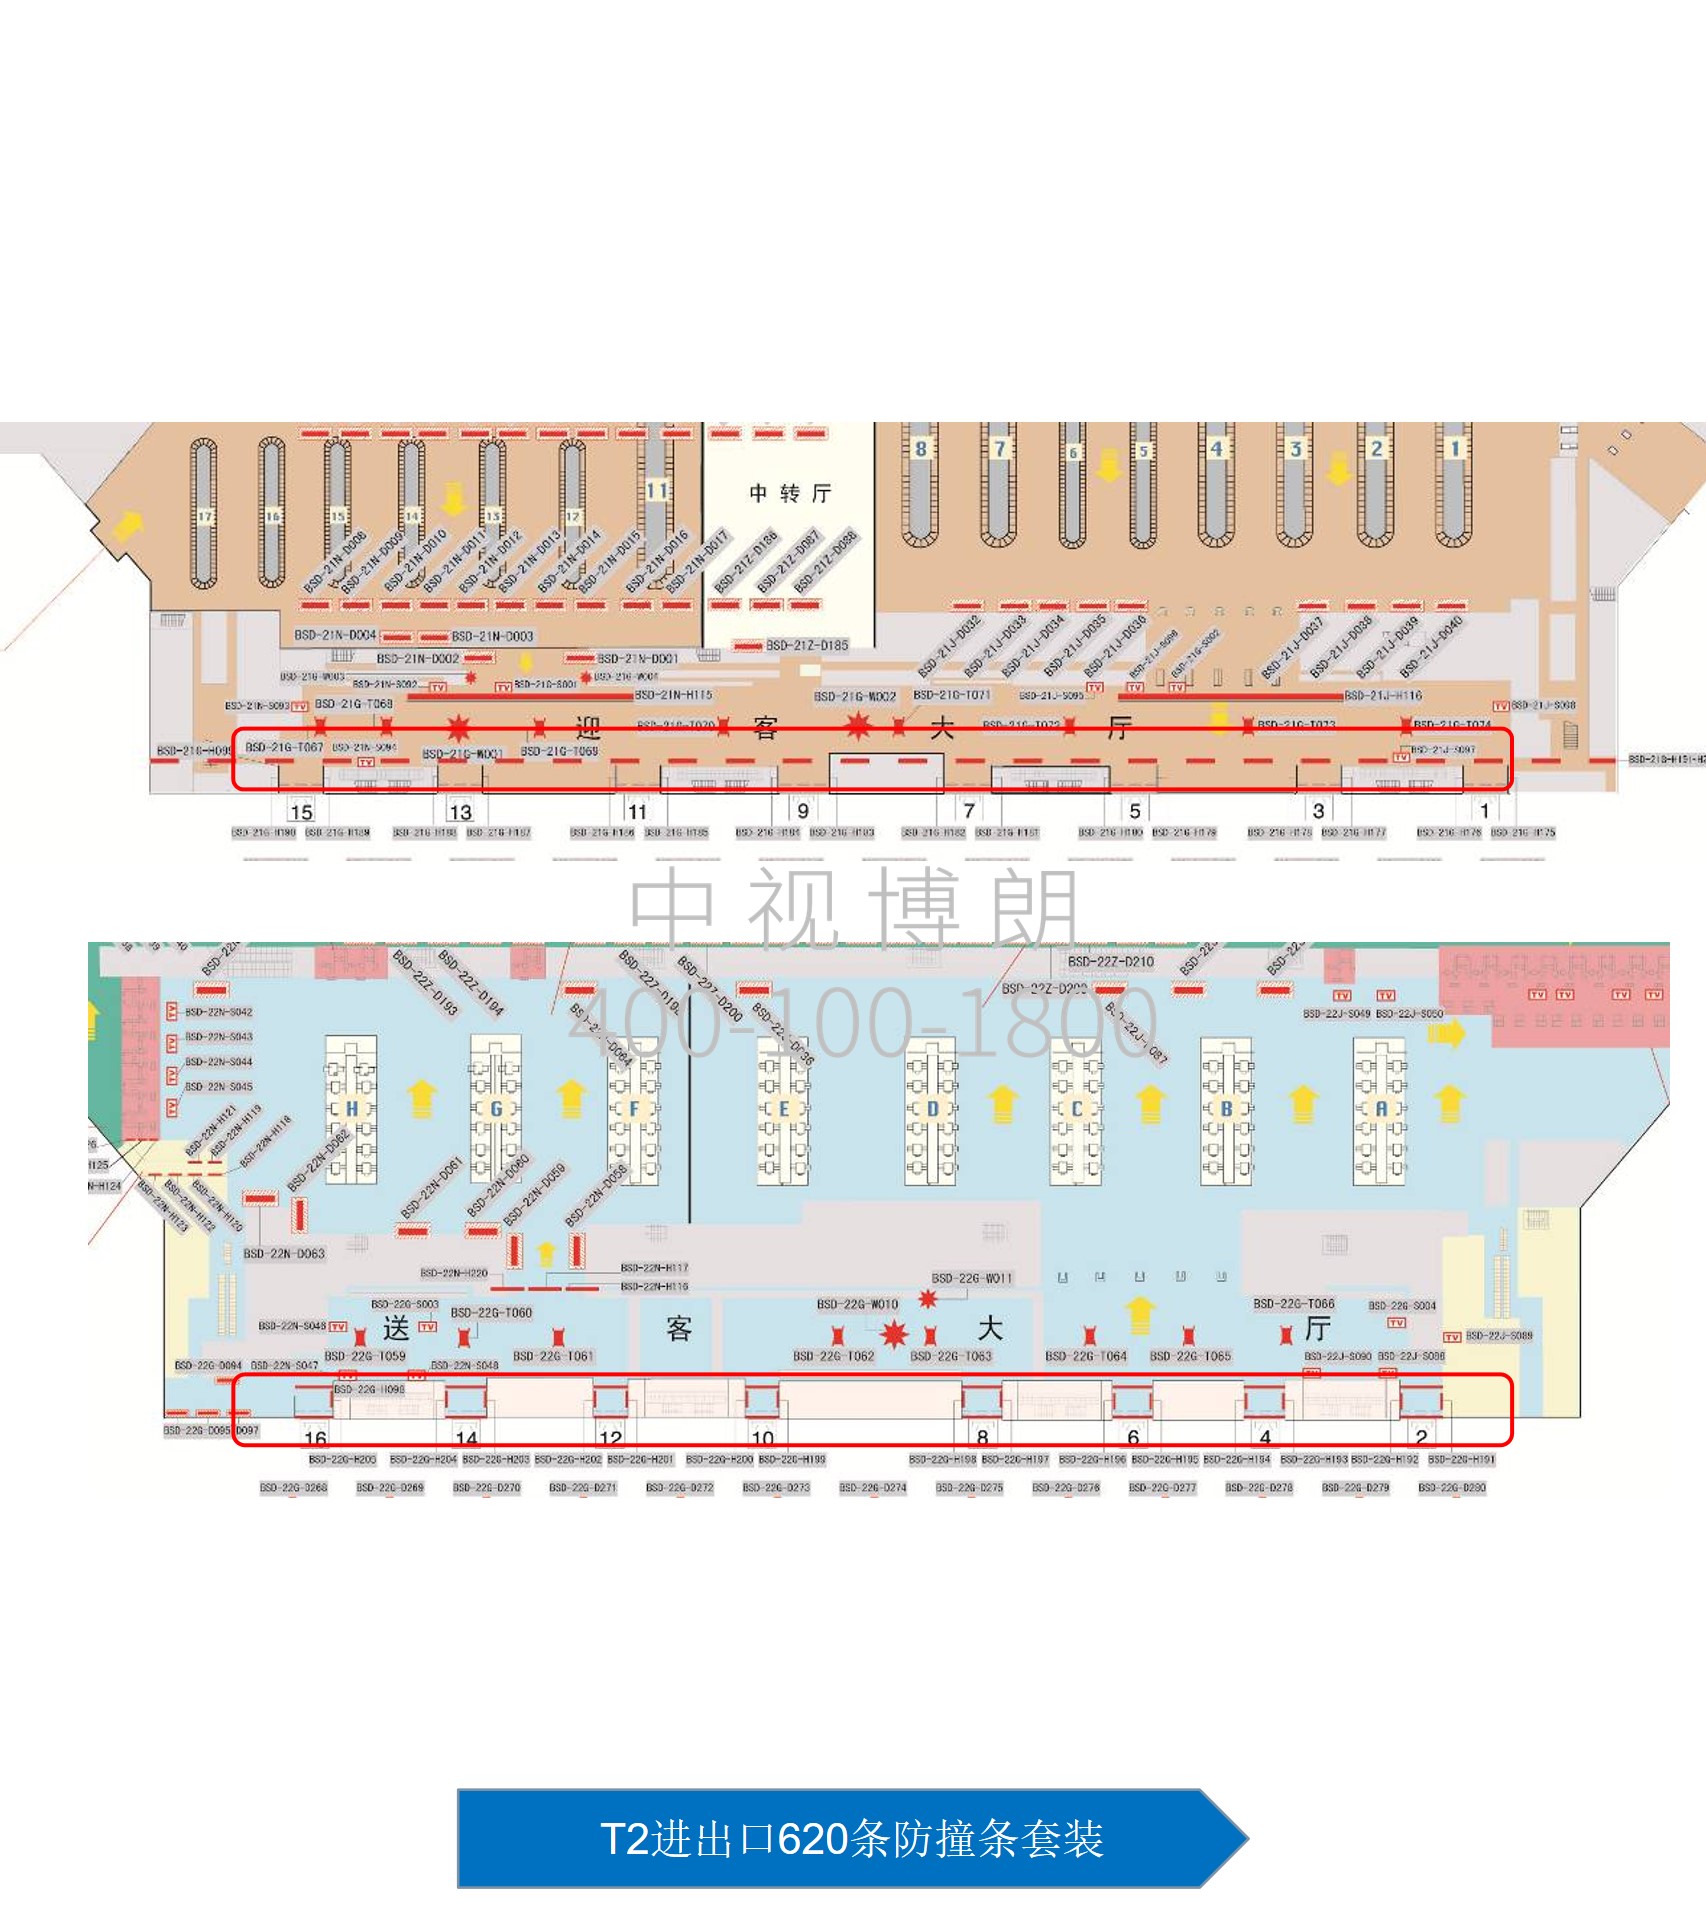 北京首都机场广告-T2进出口620条防撞条套装位置图